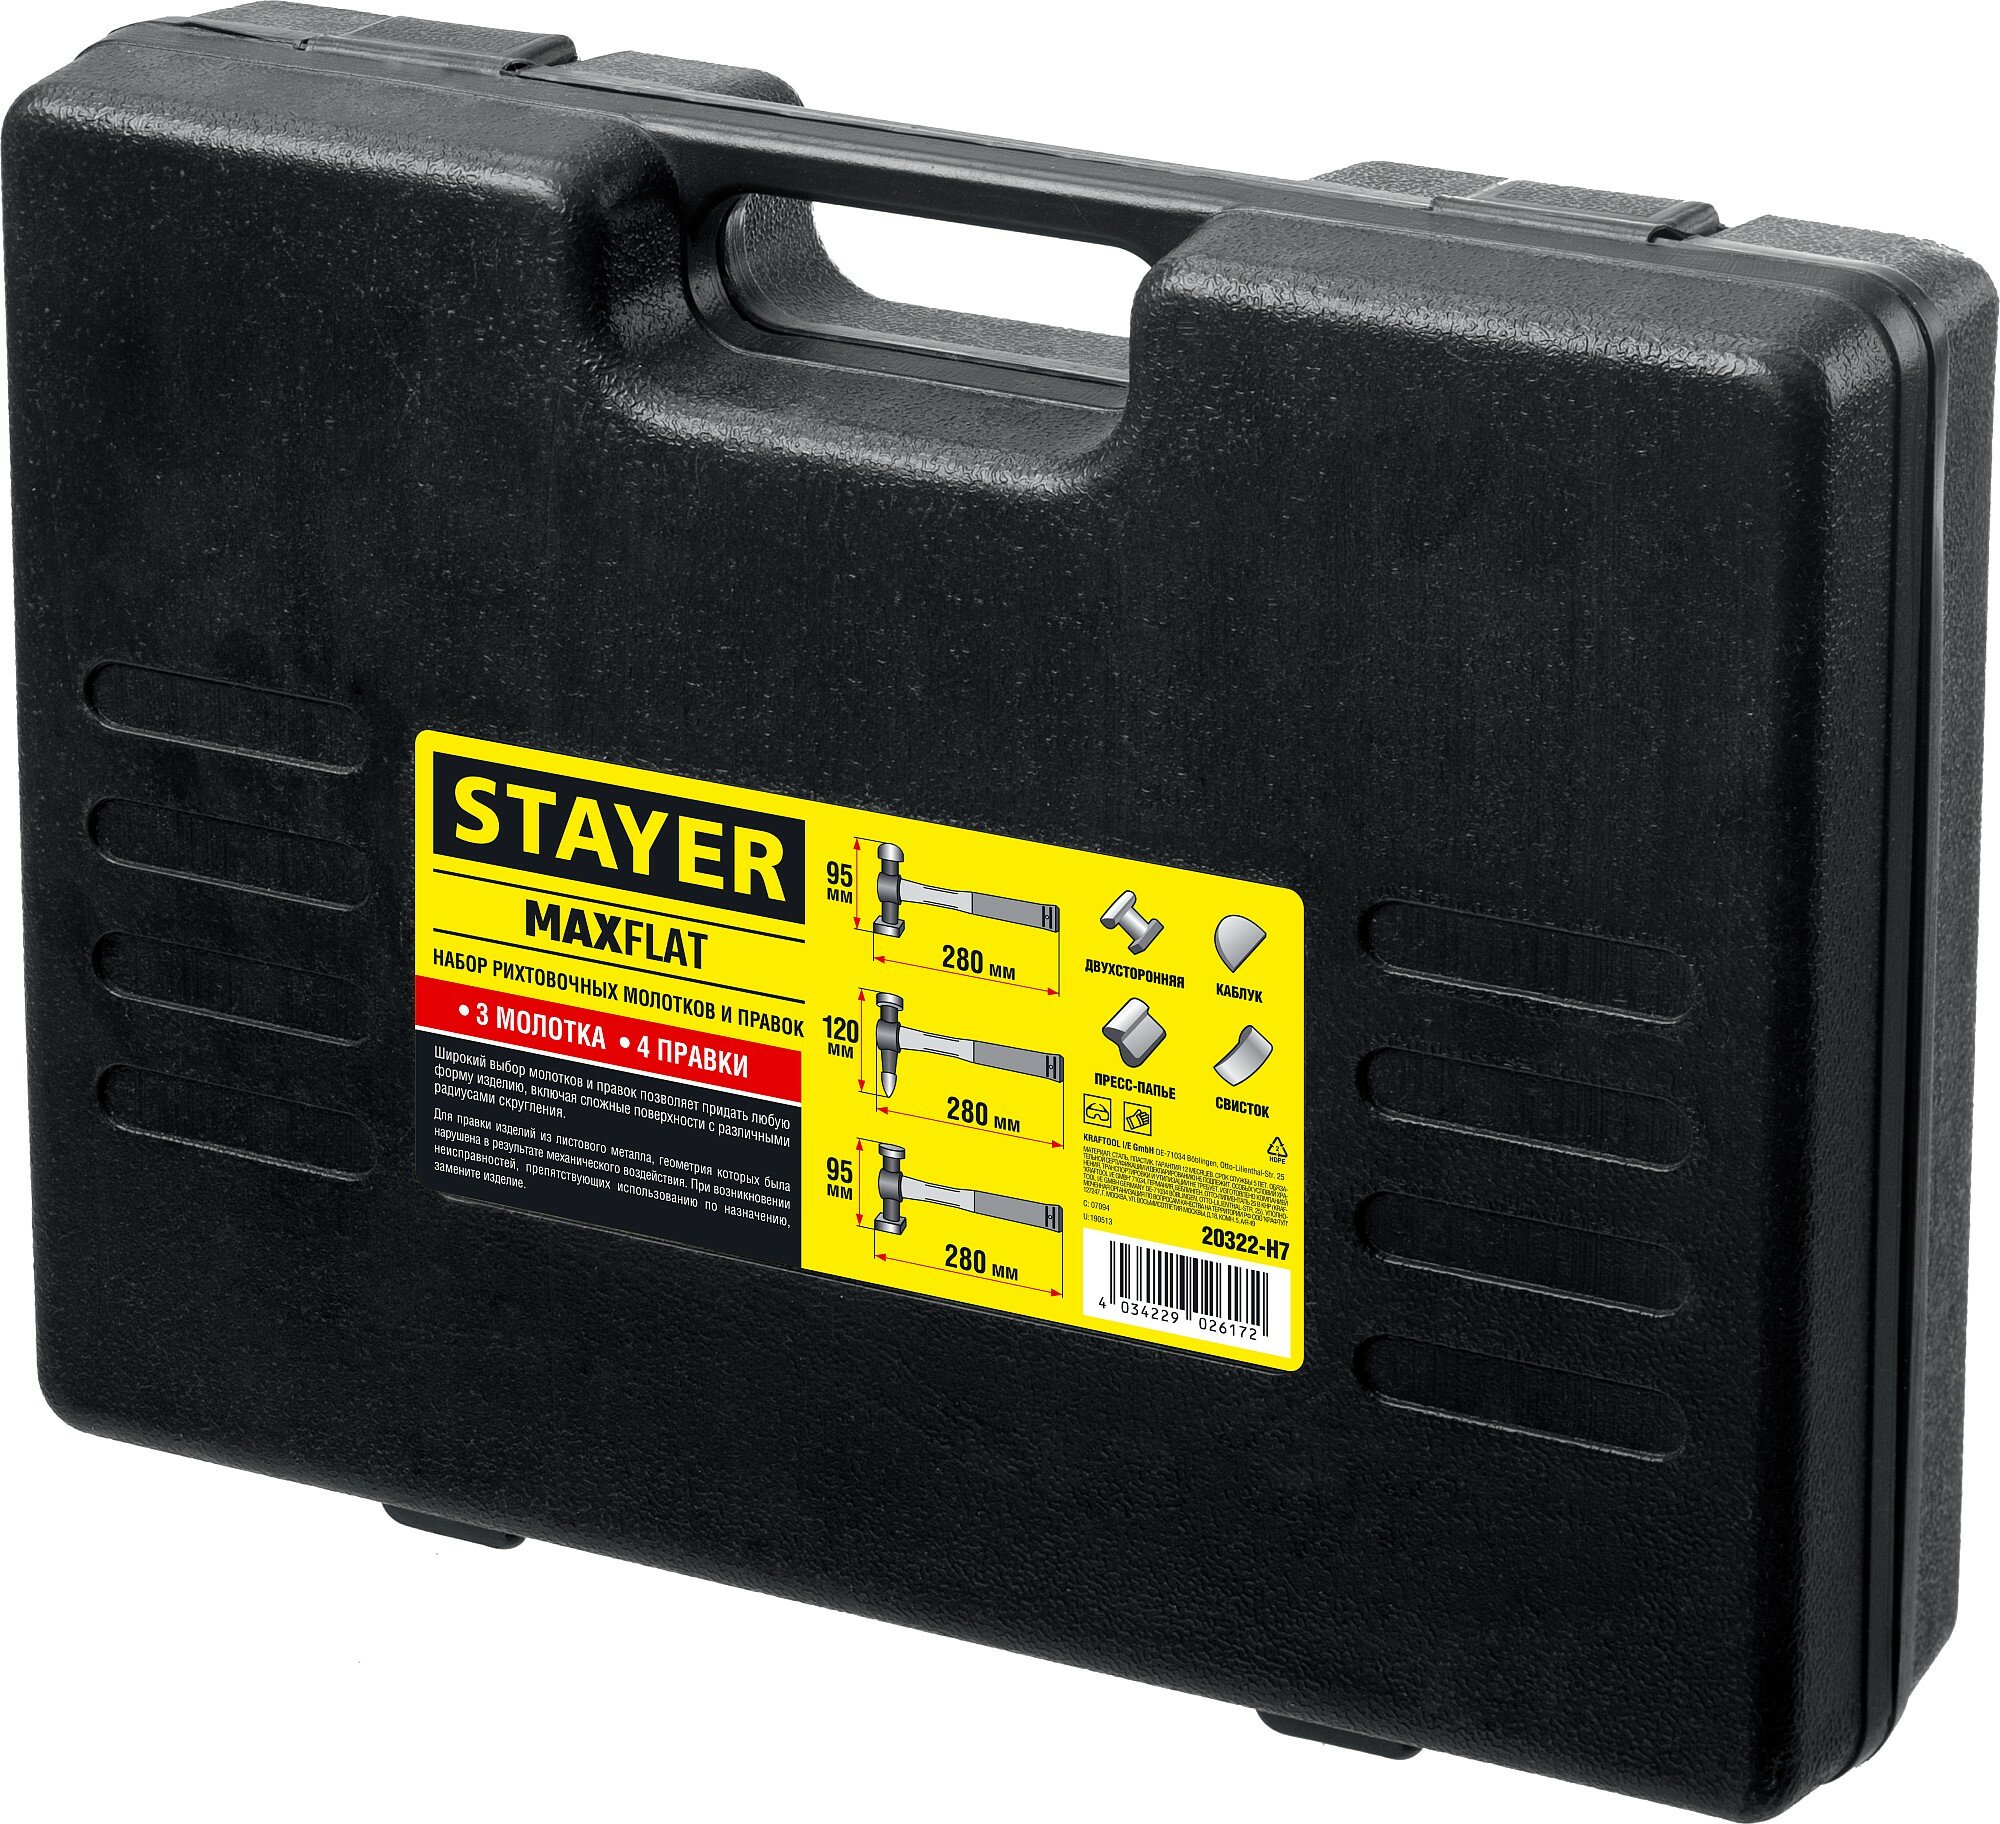 STAYER MaxFlat 7 шт, Набор рихтовочных молотков и правок (20322-H7)